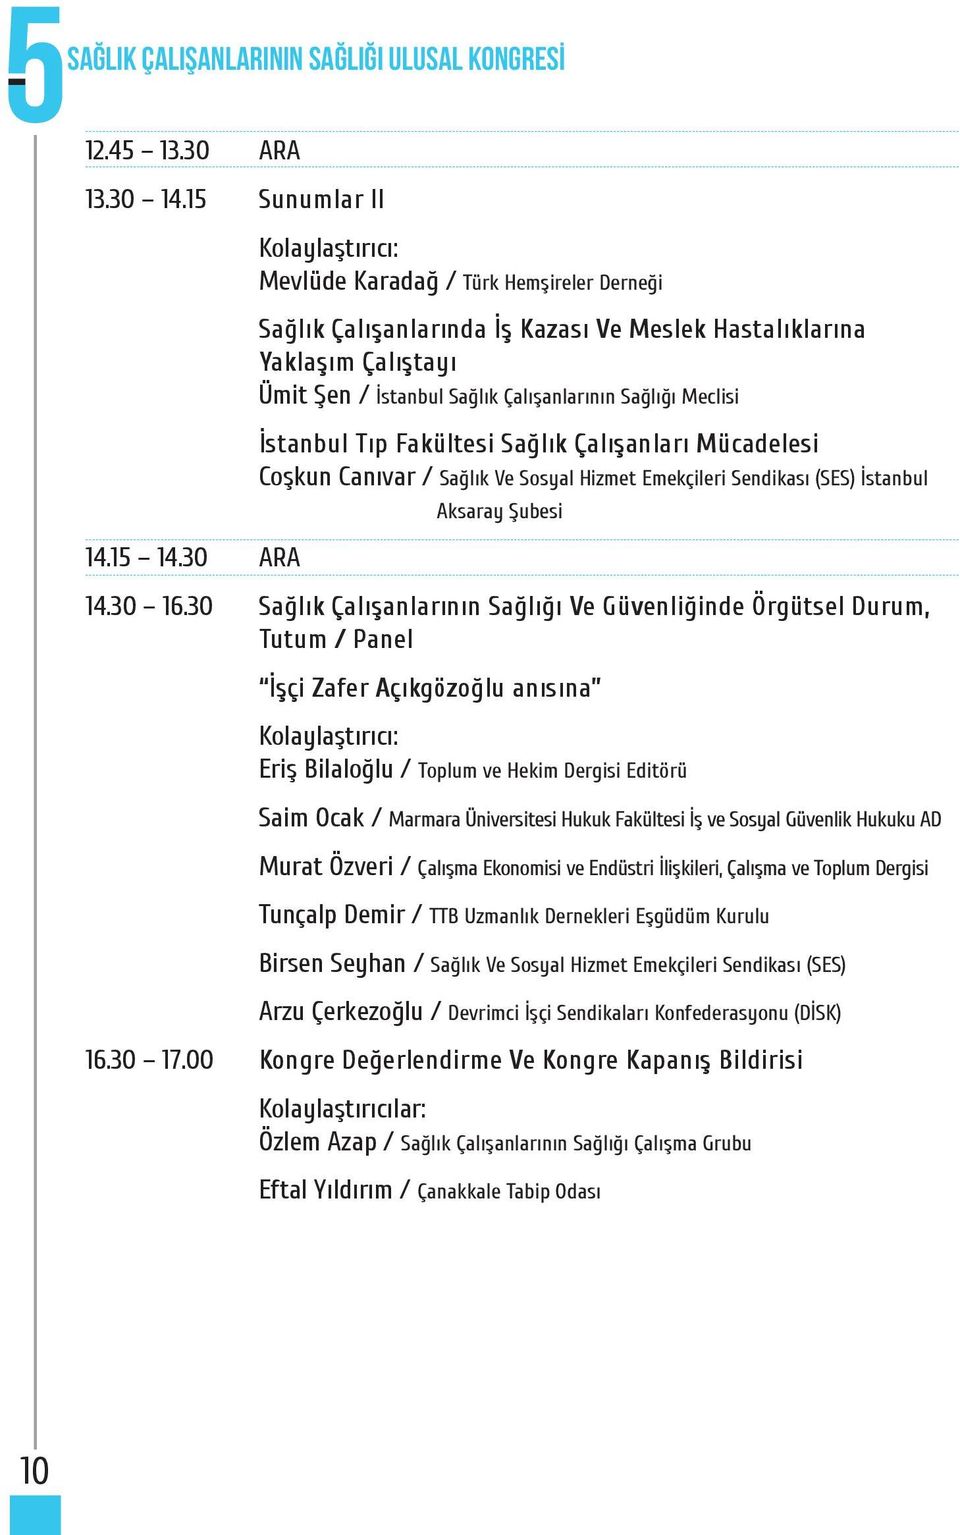 Fakültesi Sağlık Çalışanları Mücadelesi Coşkun Canıvar / Sağlık Ve Sosyal Hizmet Emekçileri Sendikası (SES) İstanbul Aksaray Şubesi 14.30 16.